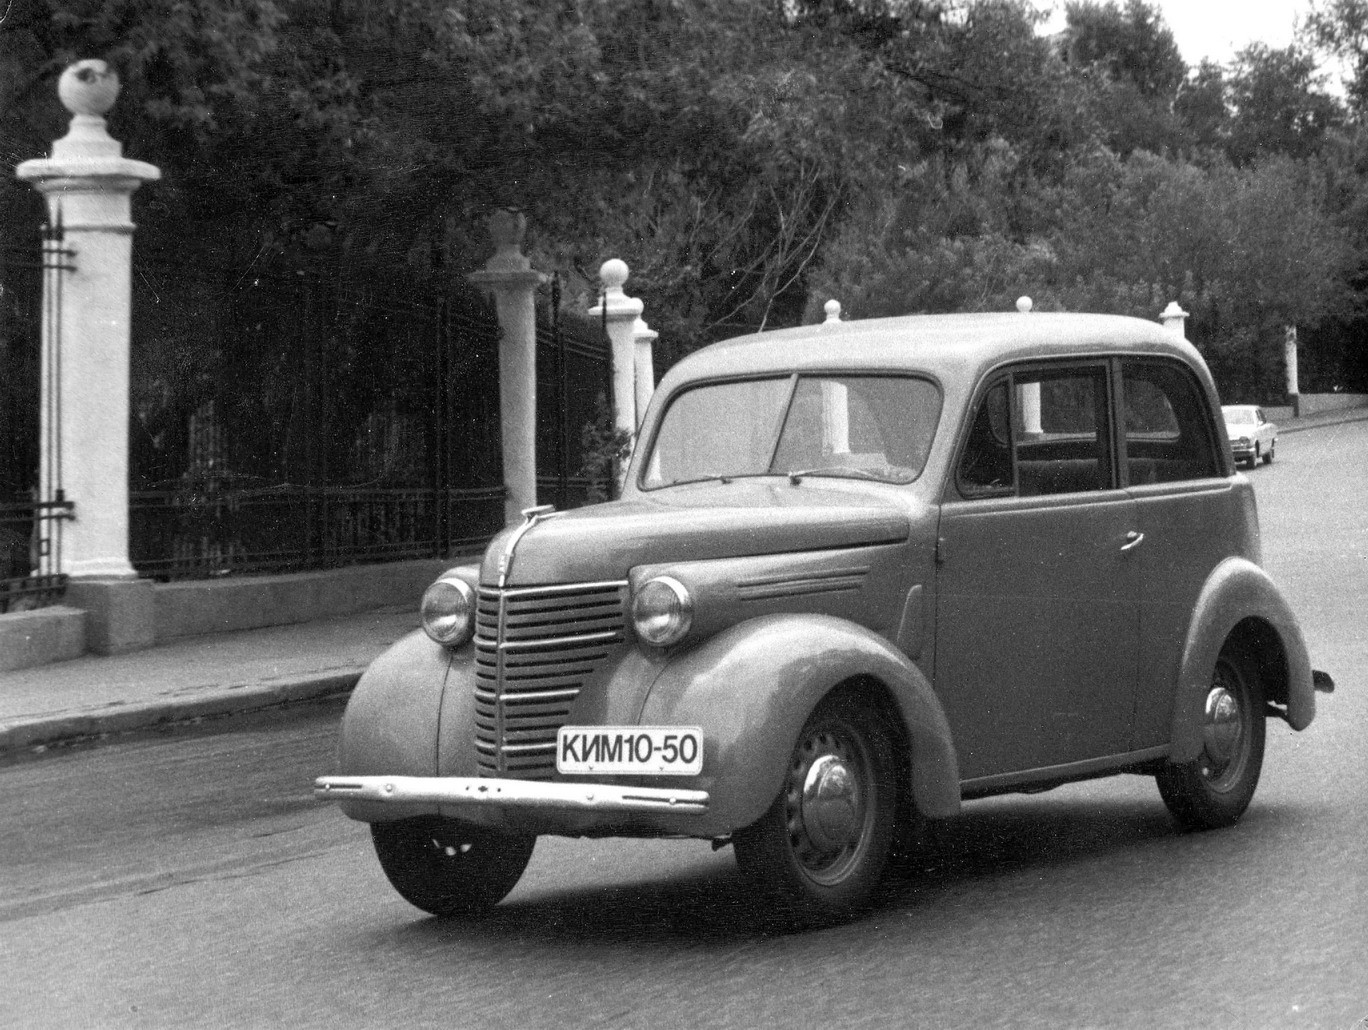 Детище Гитлера и афера невиданного масштаба: как и зачем УАЗ критиковал Volkswagen в 1970 году volkswagen,Марки и модели,«Москвич»,ретро